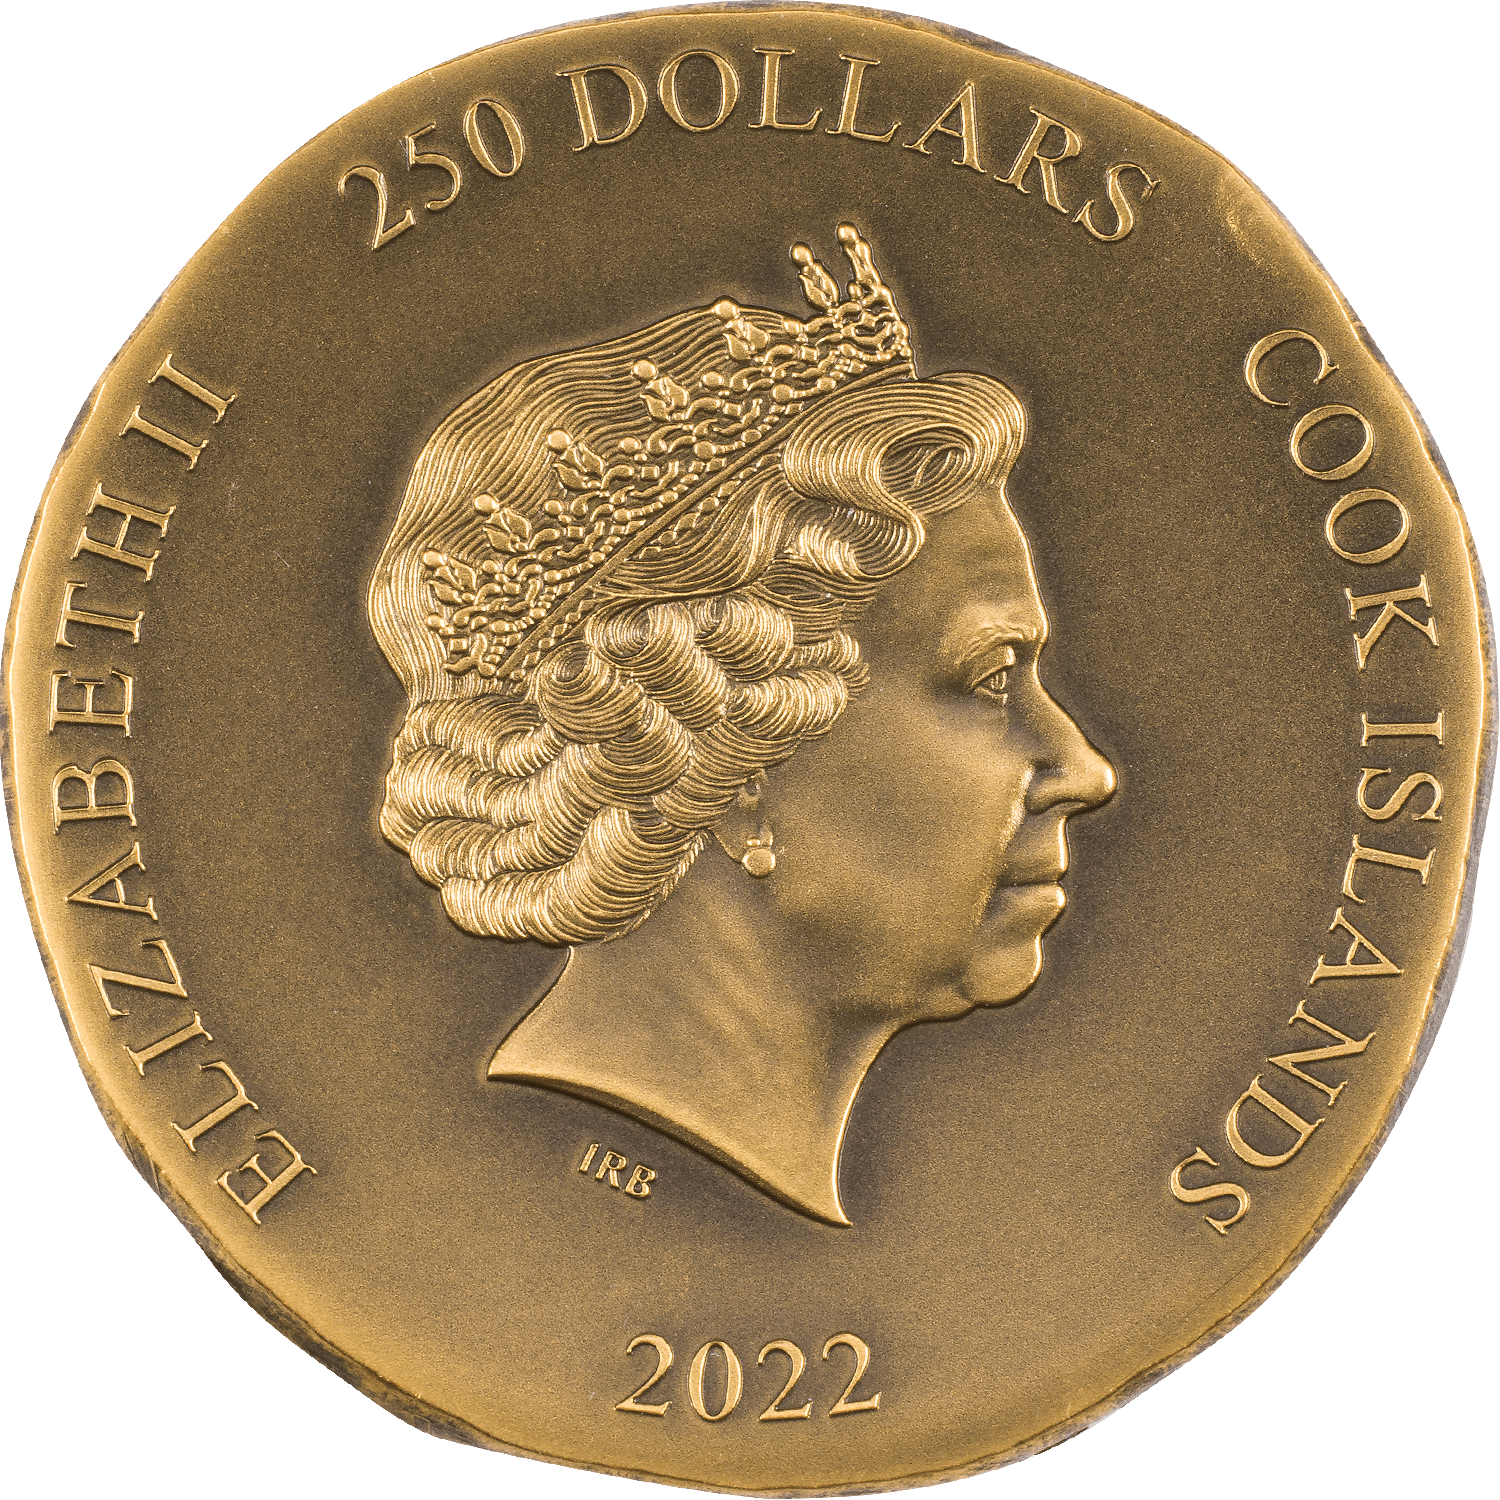 PEGASOS Numismatic Icons 1 Oz Gold Coin $250 Cook Islands 2022 - PARTHAVA COIN